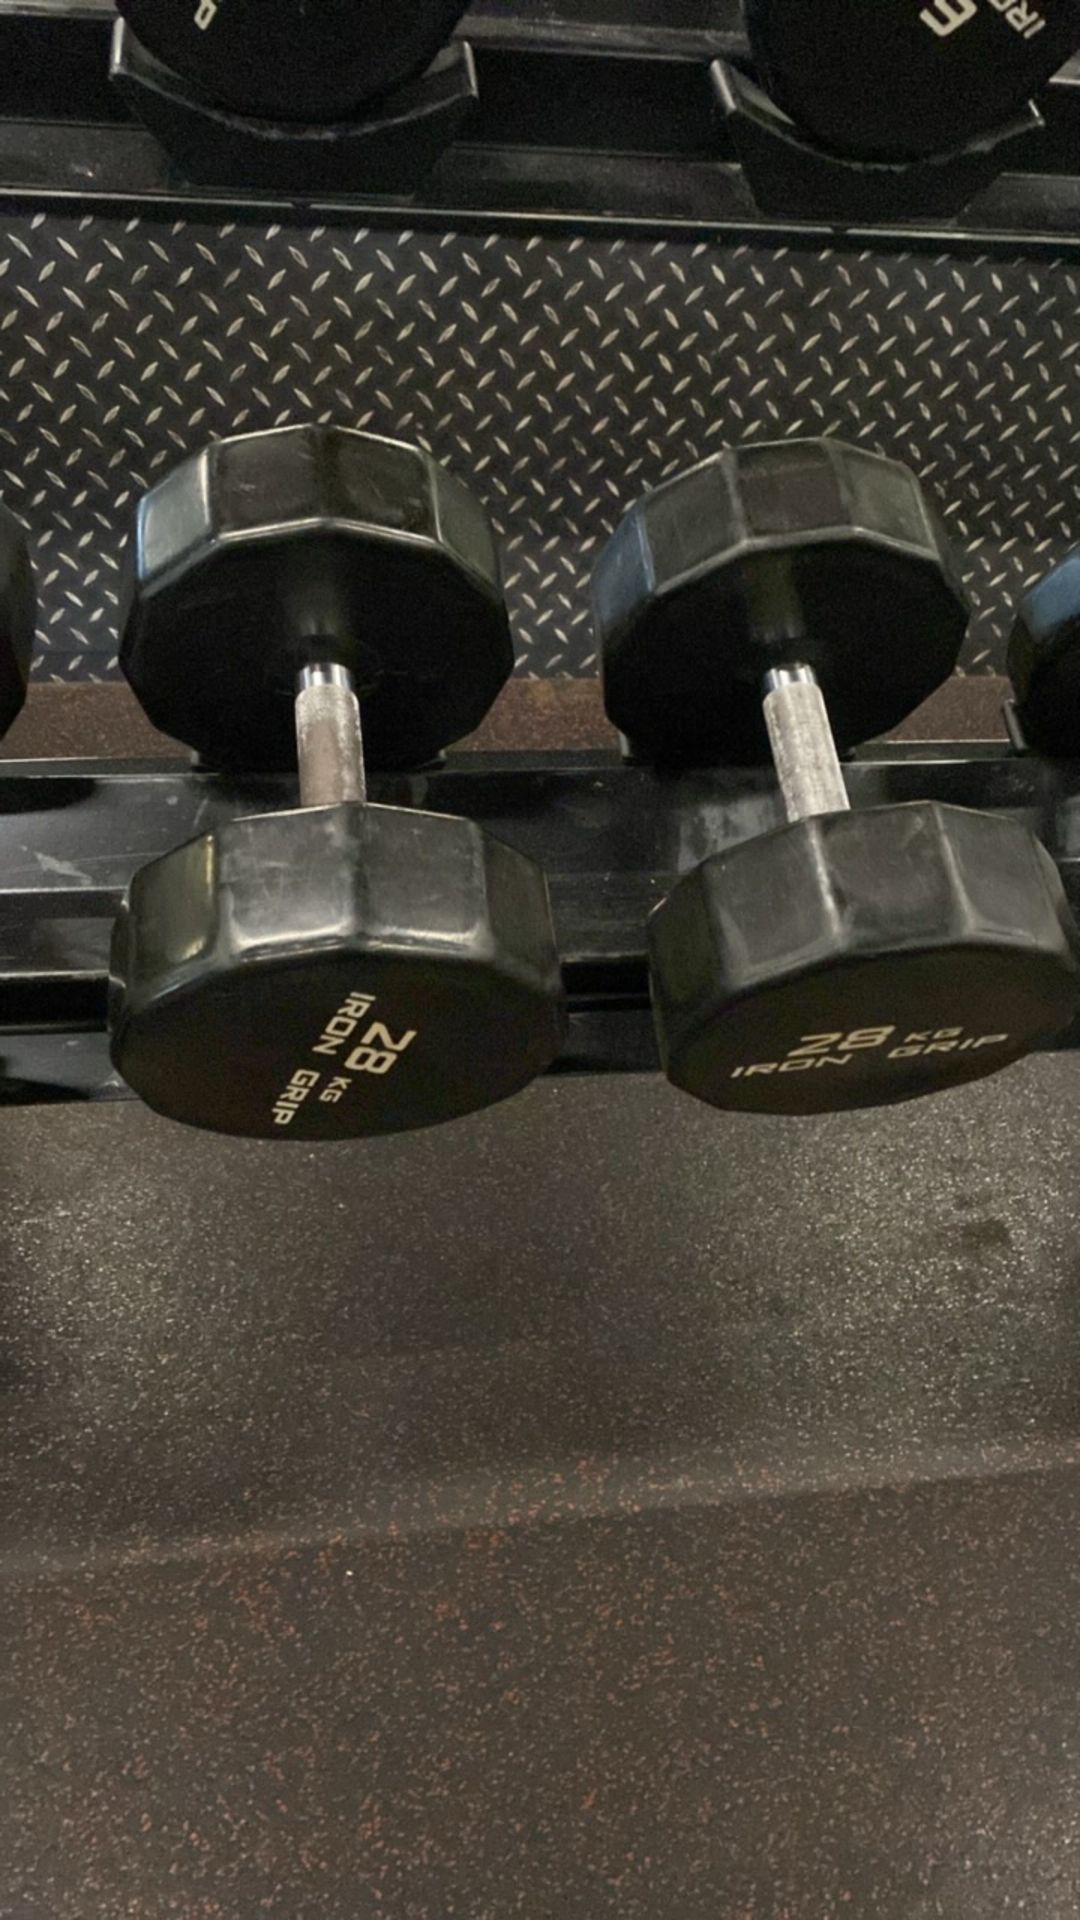 Iron Grip Dumbell Set 28kg, 30kg - Image 5 of 5